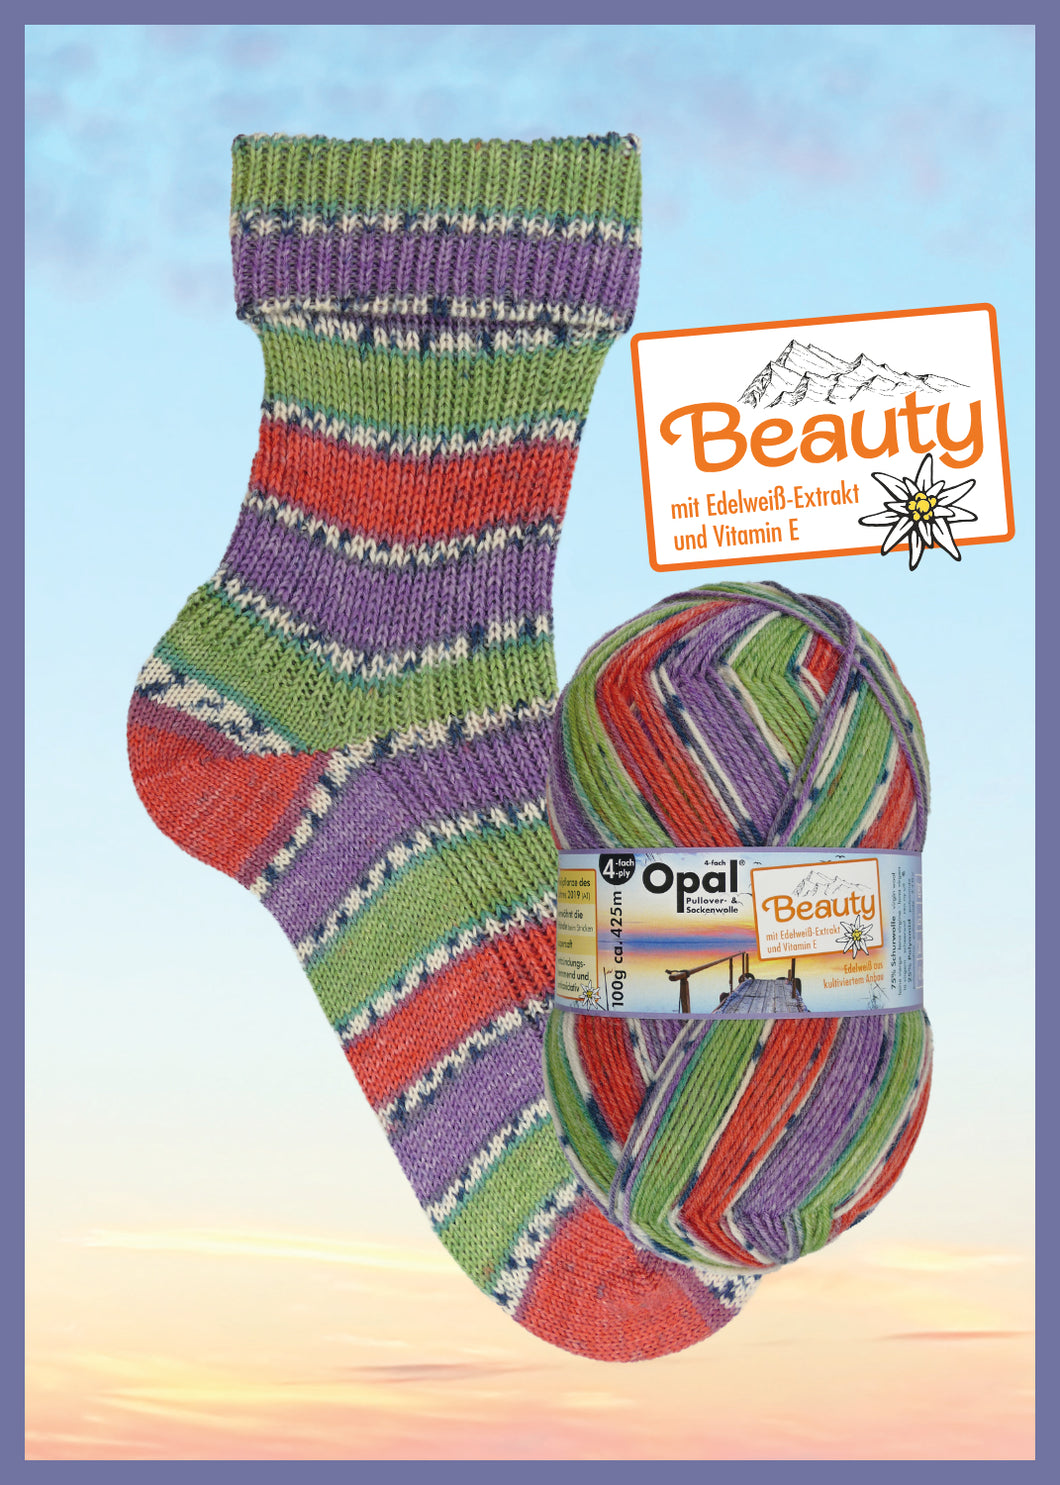 güstig kaufen	Beauty - Wellness  mit Edelweiß-Extrakt und Vitamin E - 4-fach Sockenwolle